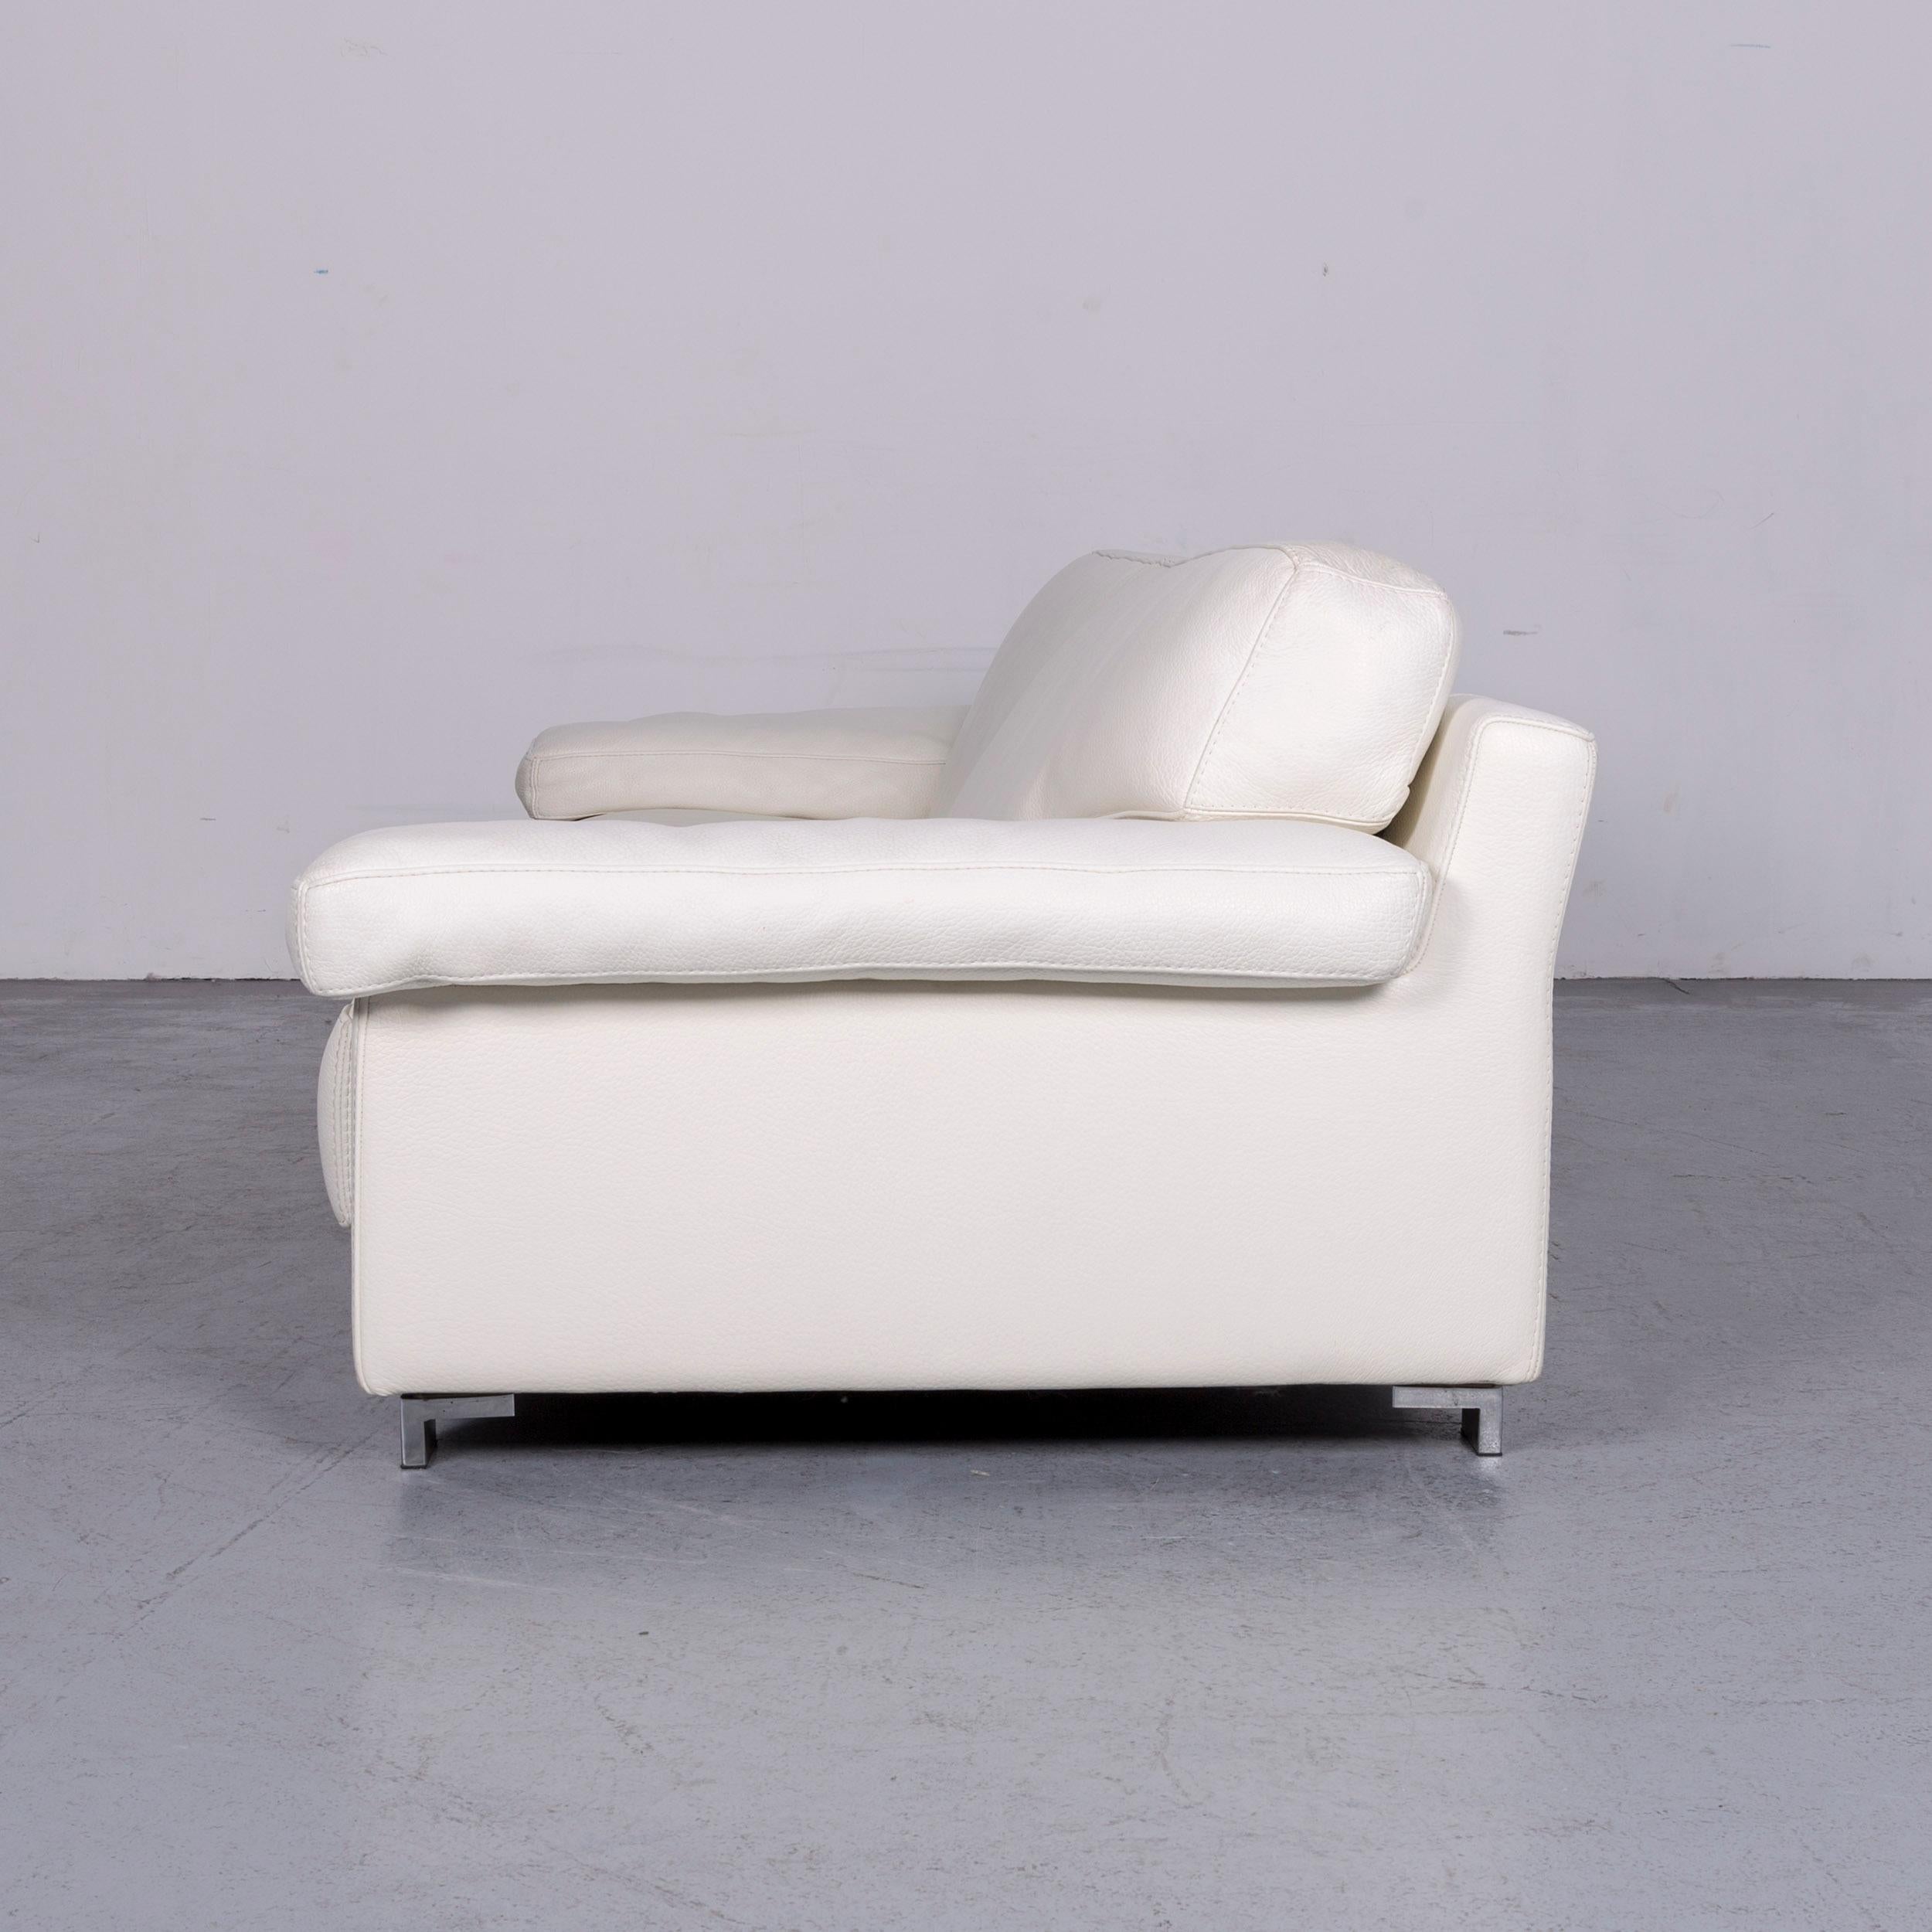 Roche Bobois Designer Leather Sofa White Three-Seat Couch 1